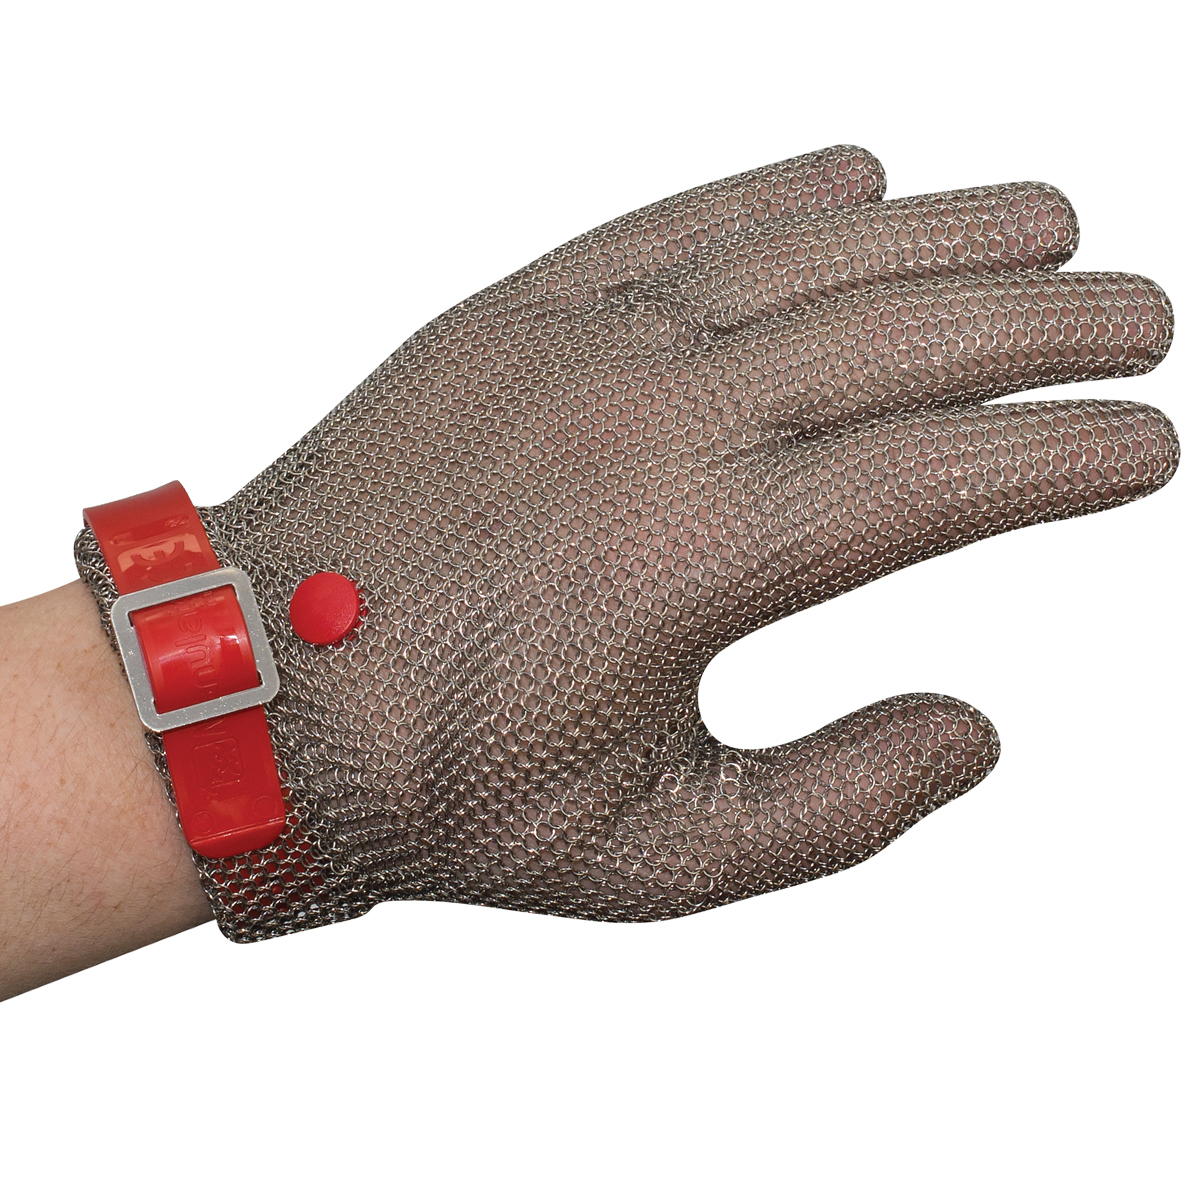 Manulatex Chain Mesh Glove, Wrist Length